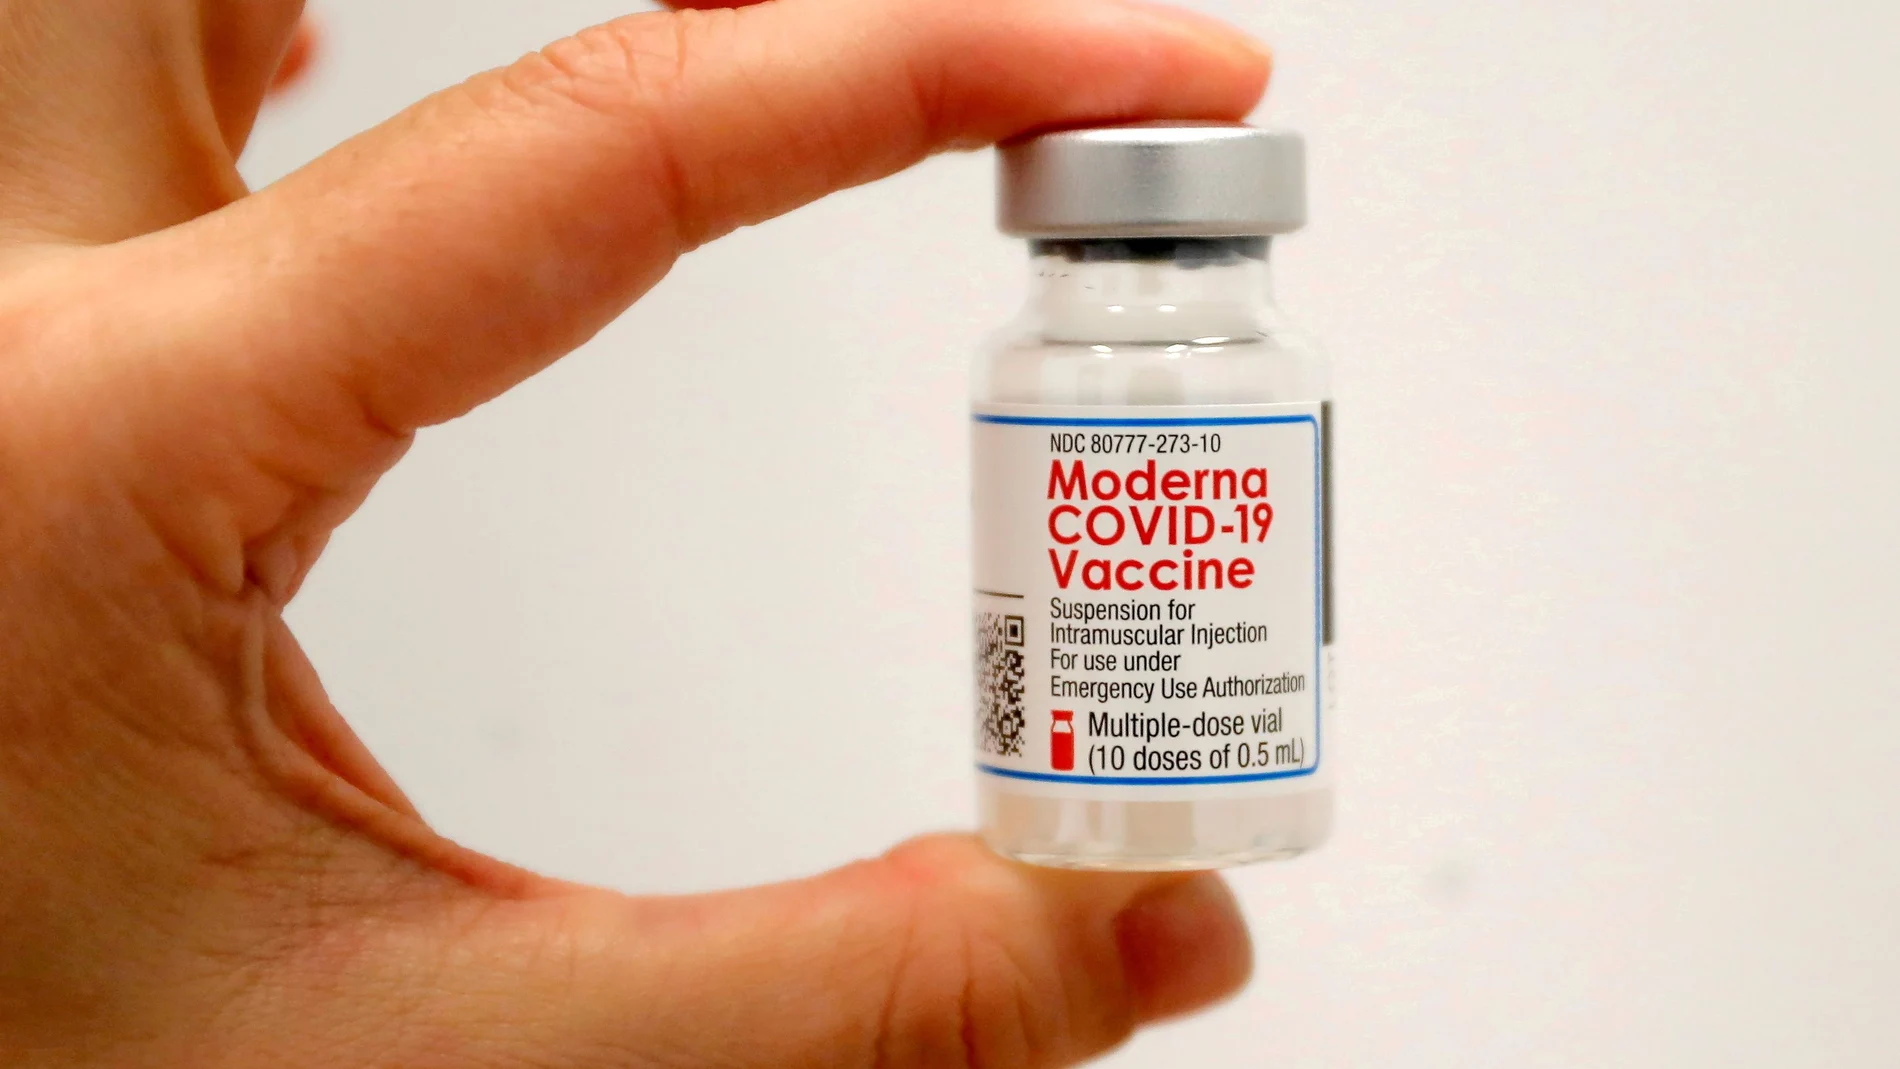 Condenan a 3 años a un farmacéutico de EEUU que dañó cientos de vacunas contra la covid